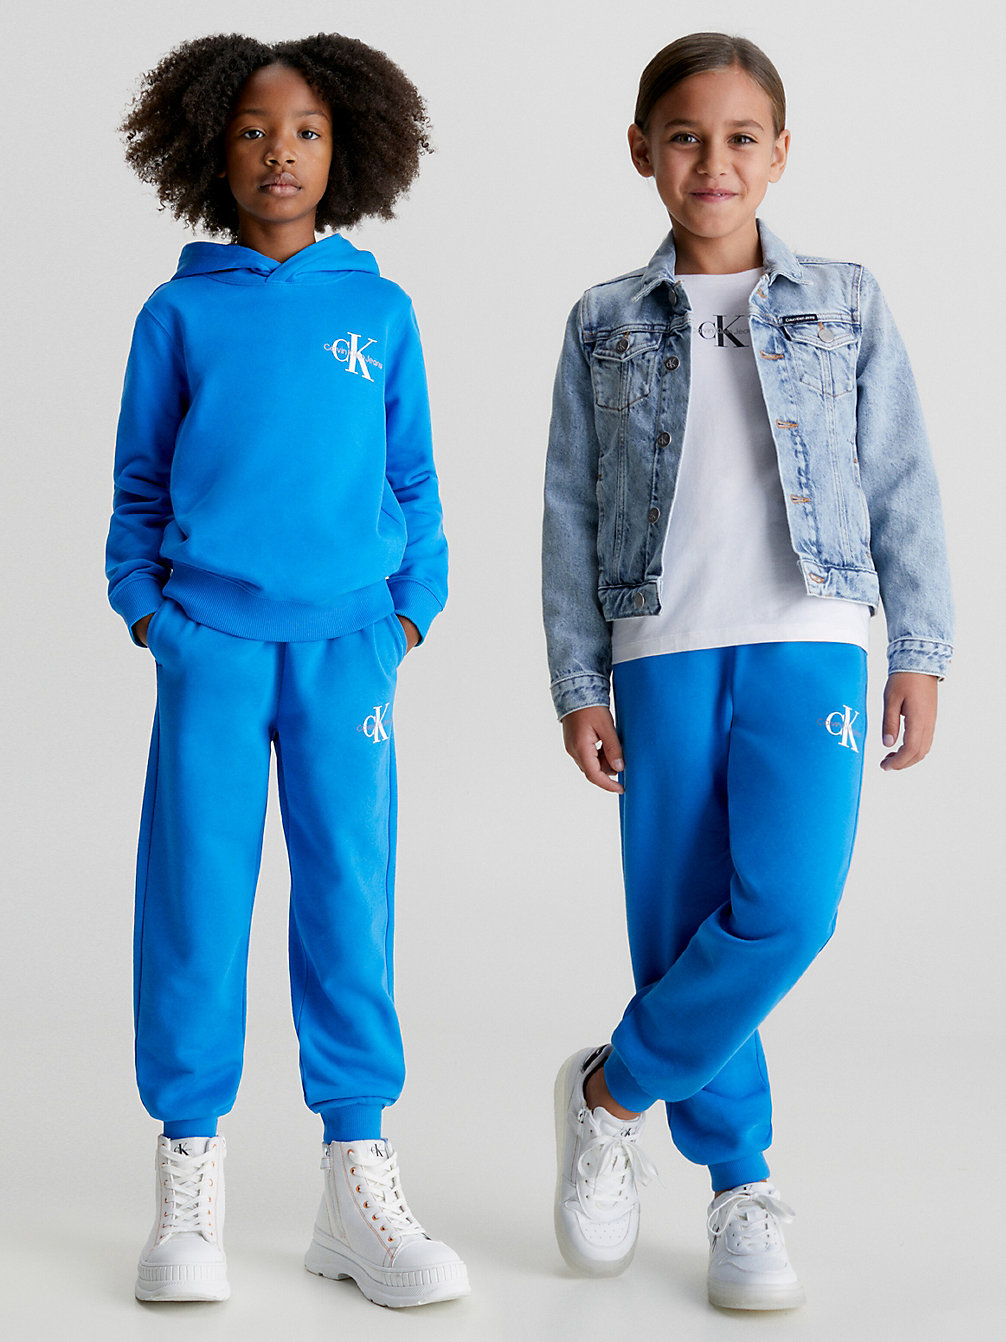 CORRIB RIVER BLUE Lässige Jogginghose Für Kinder undefined kids unisex Calvin Klein